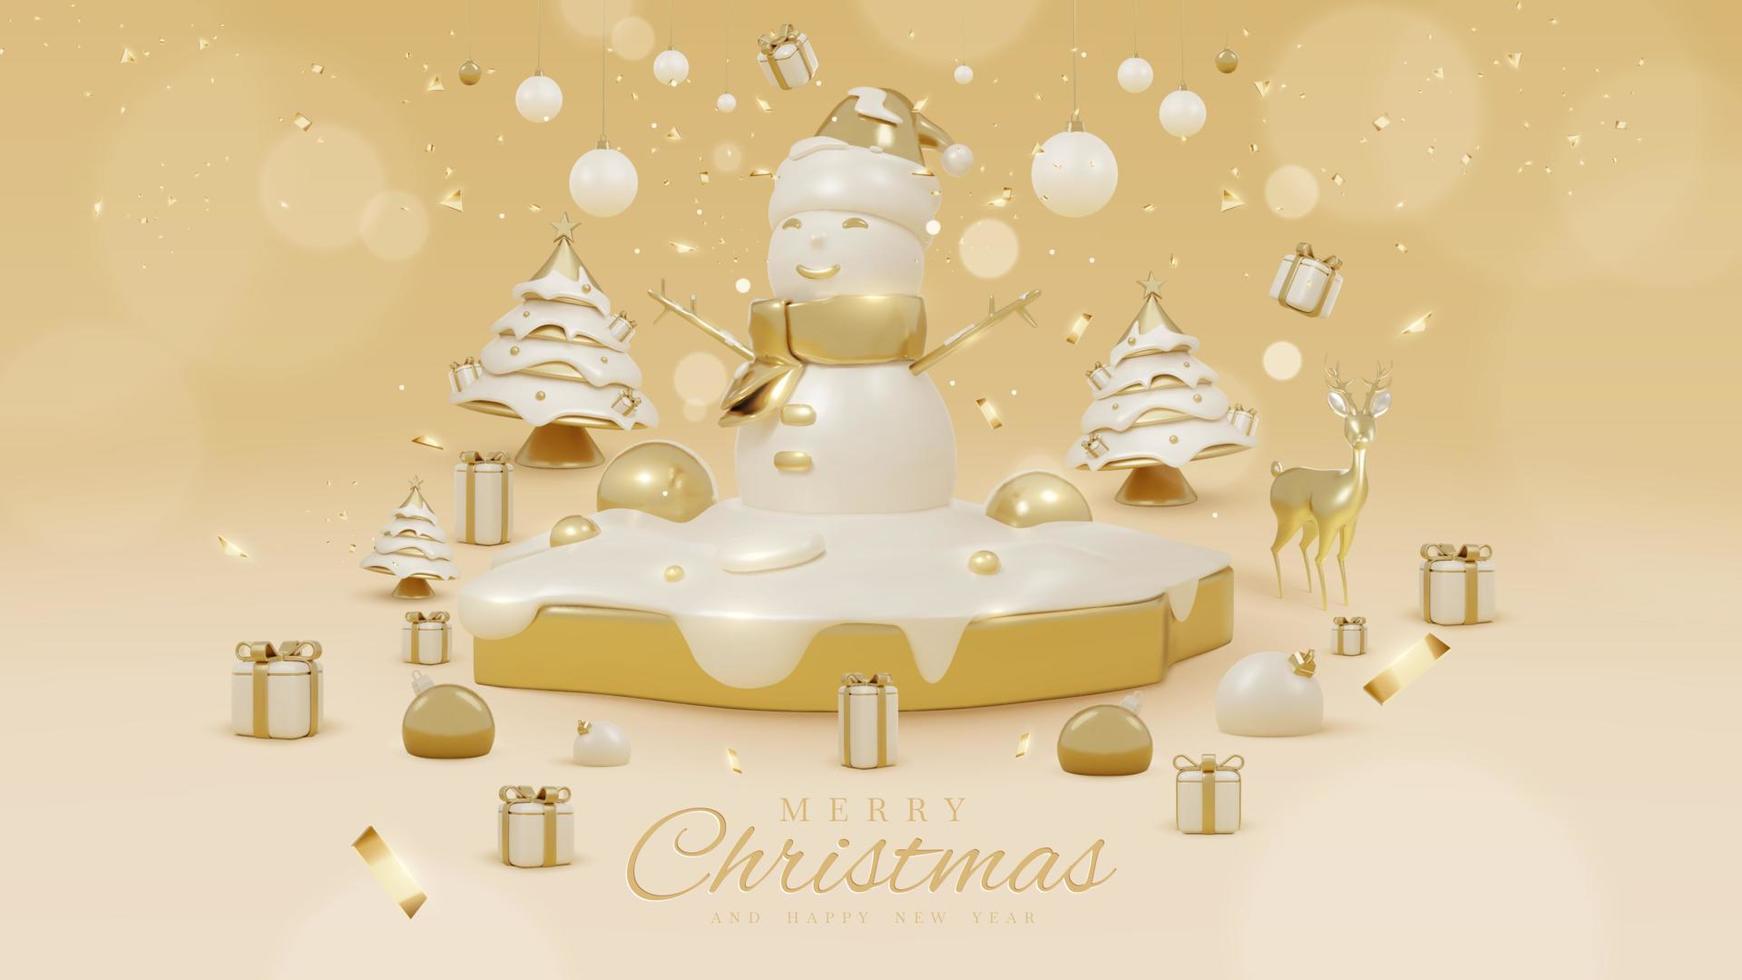 fundo de luxo com boneco de neve no pódio dourado e elementos de neve com enfeites de natal realistas 3d e decorações de efeito de luz cintilante e bokeh. ilustração vetorial. vetor